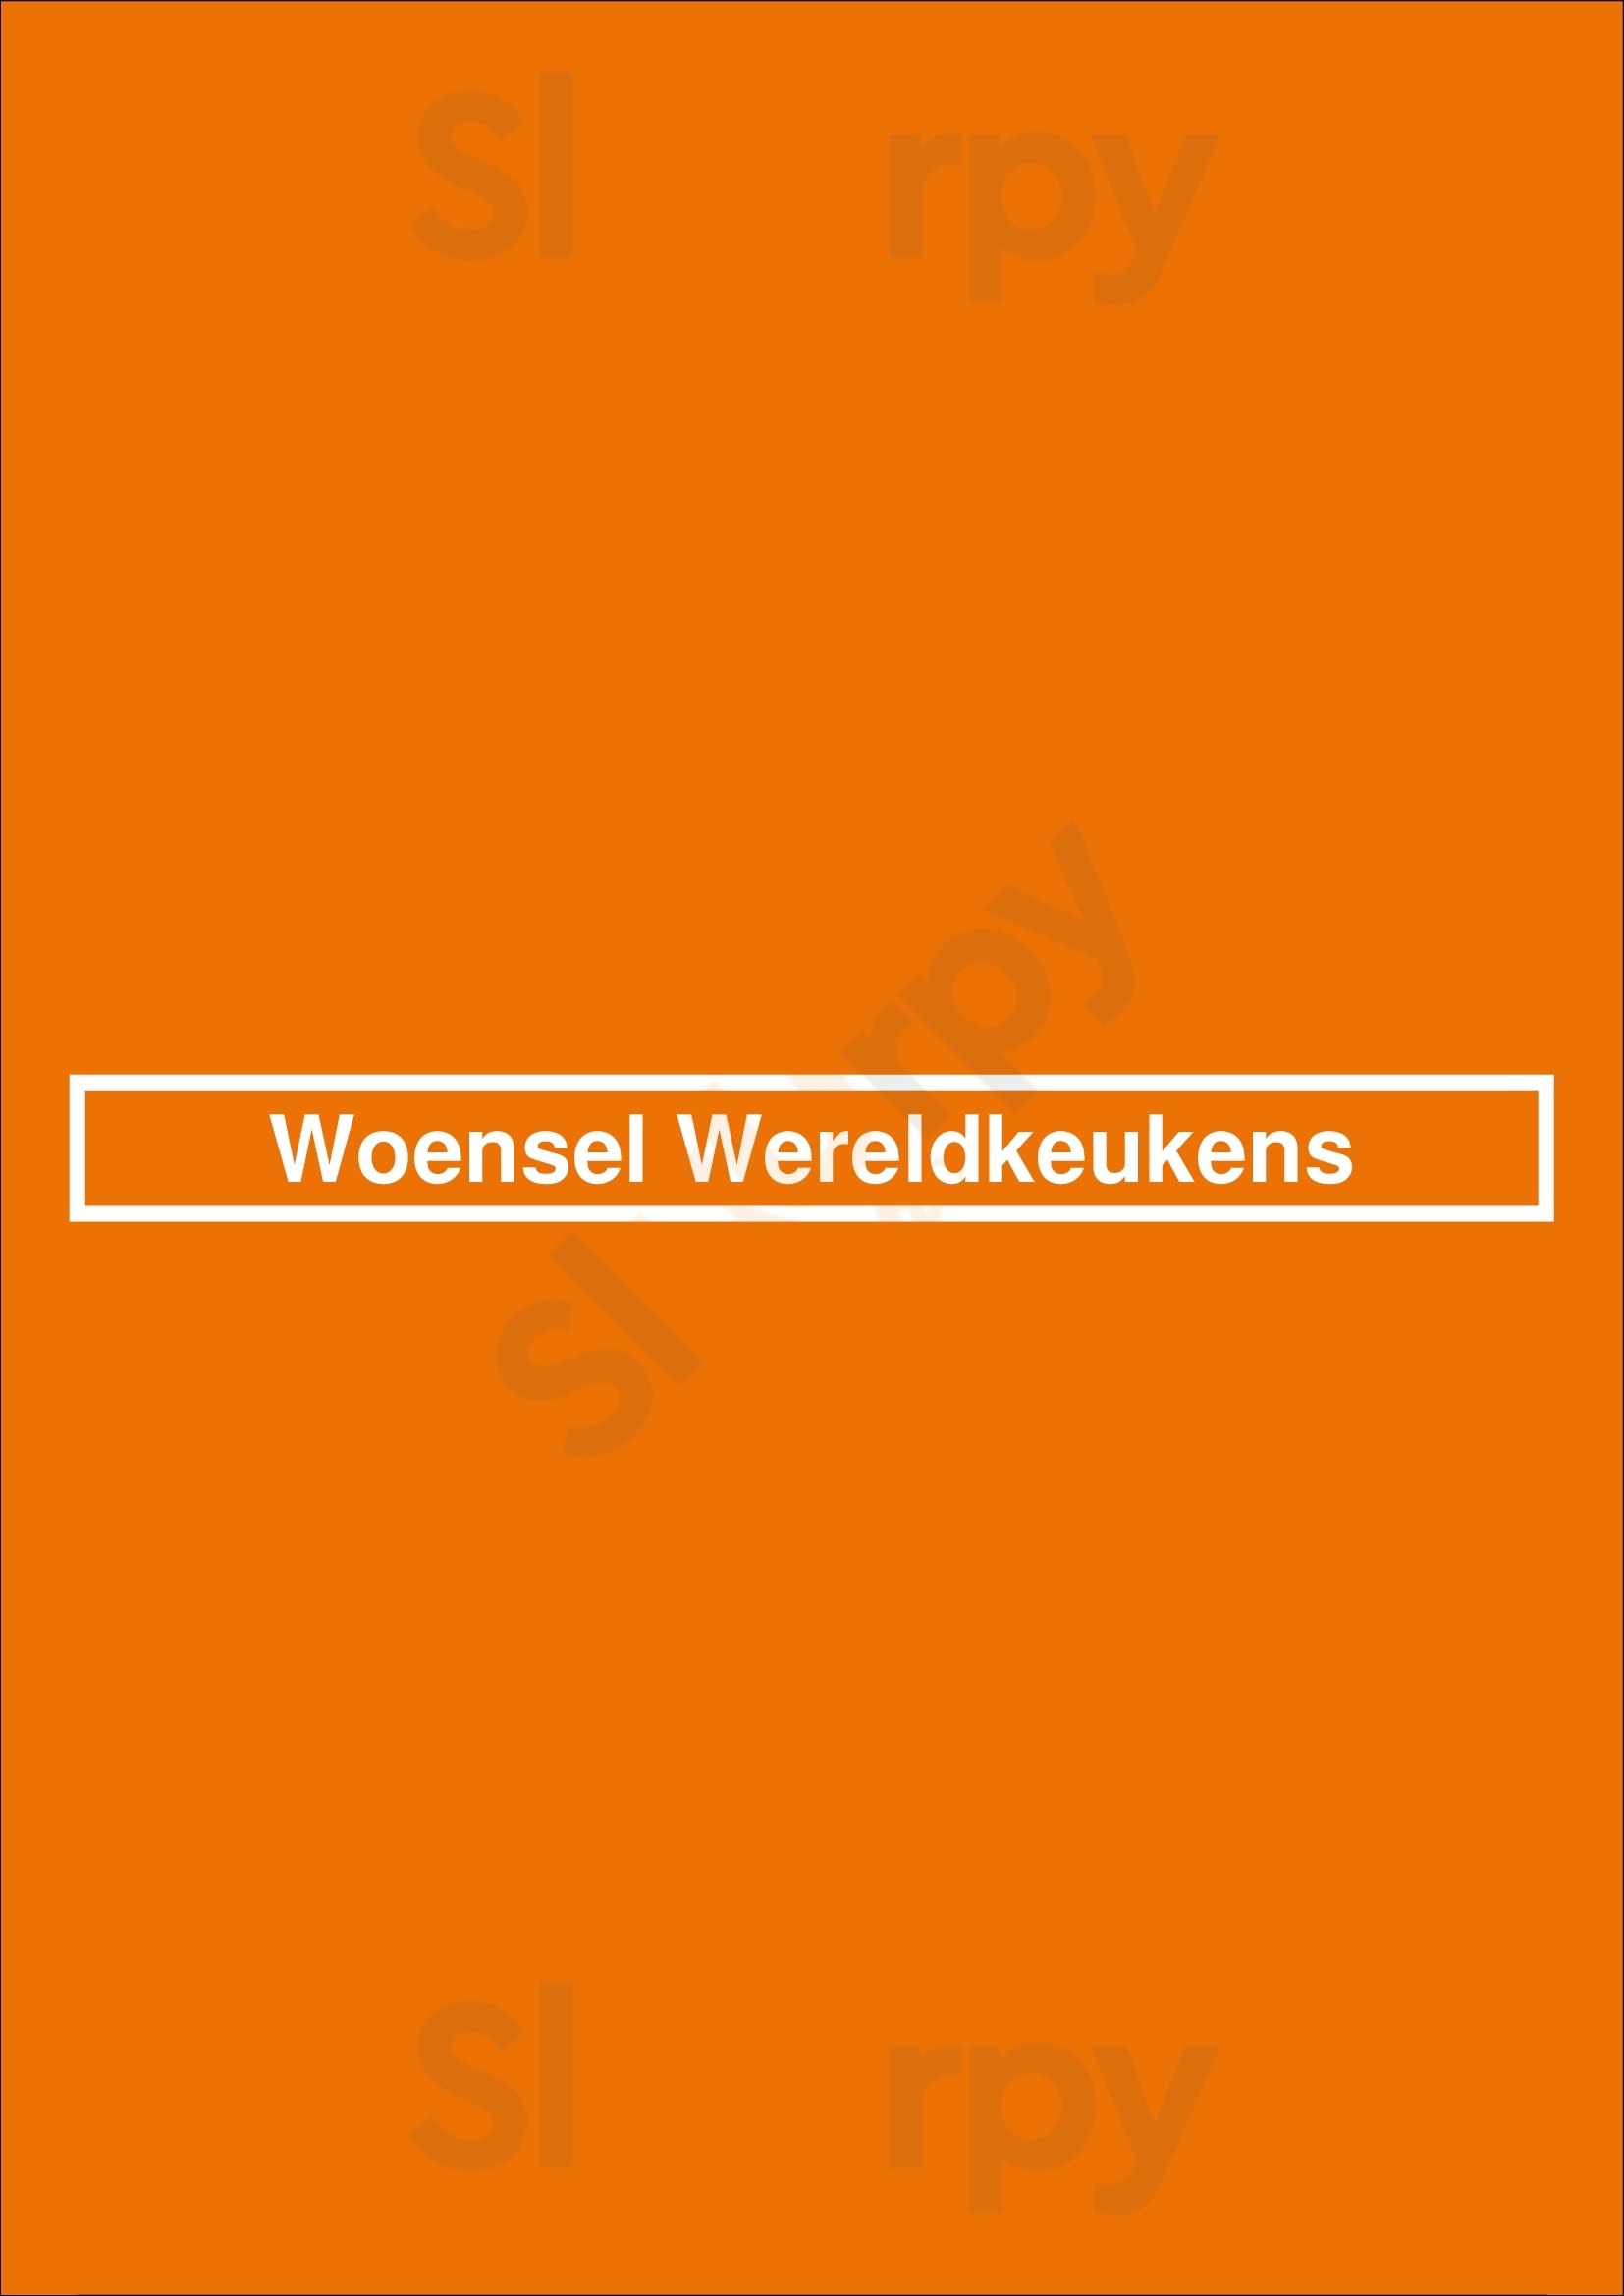 Woensel Wereldkeukens Eindhoven Menu - 1